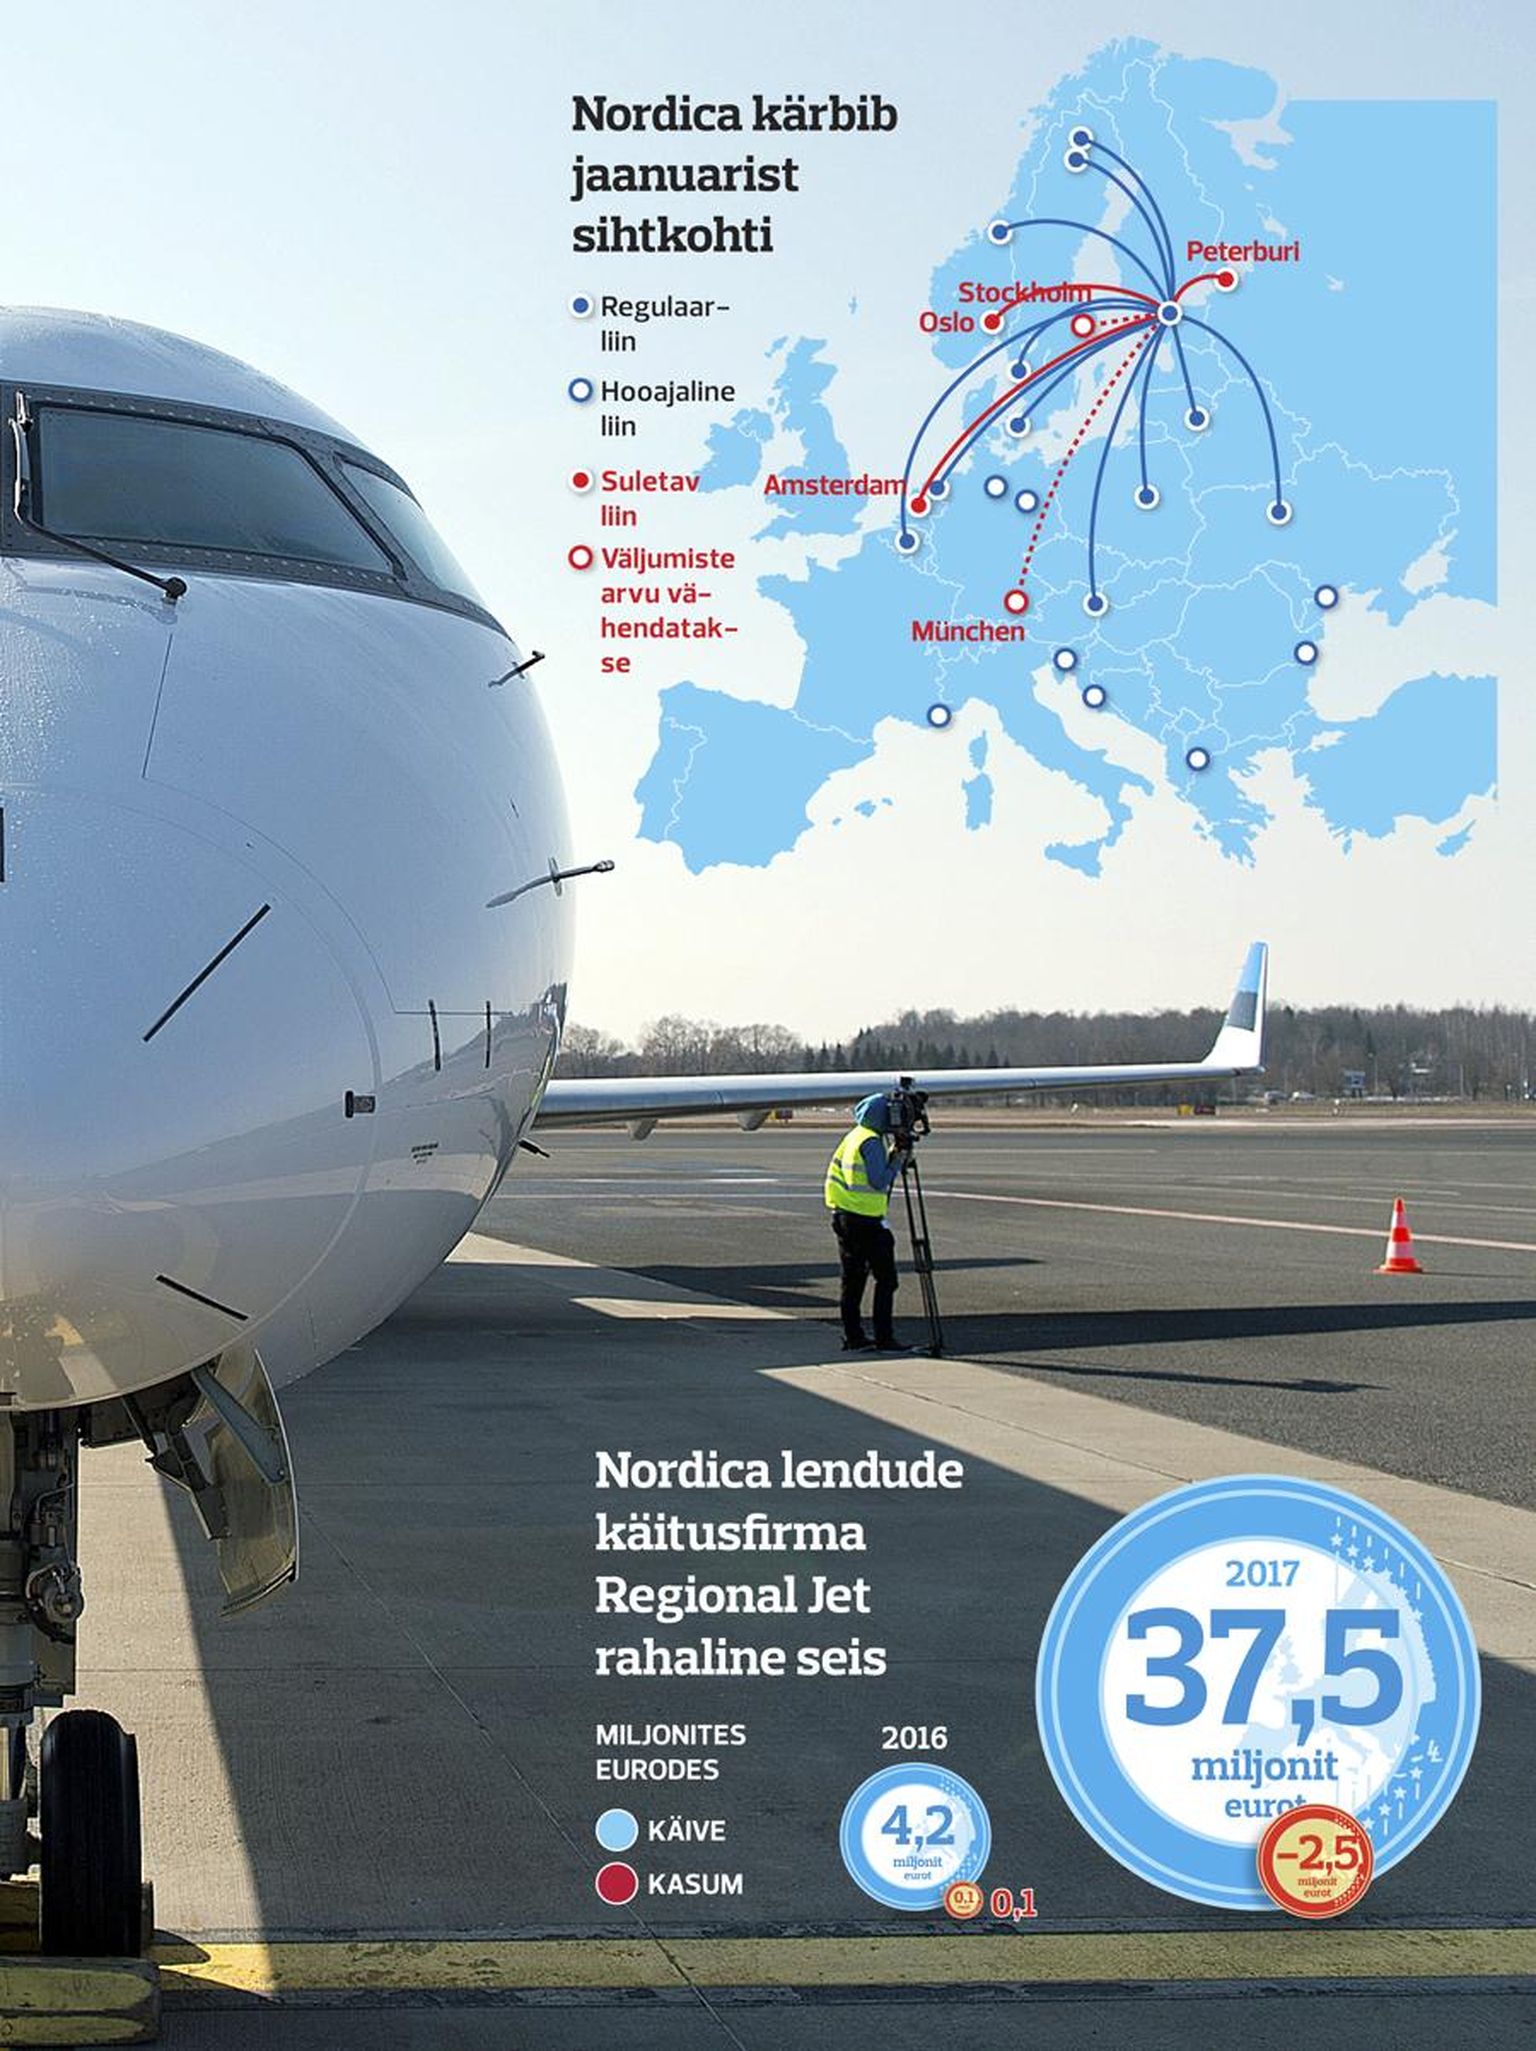 Kui veel möödunud aastal kasvas ambitsioonika Nordica lennukipark peaaegu kolm korda – kuuelt lennukilt 18-le –, siis sel ja järgmisel aastal ei ole kasvu oodata. Selle asemel tahetakse panustada kvaliteedile. 